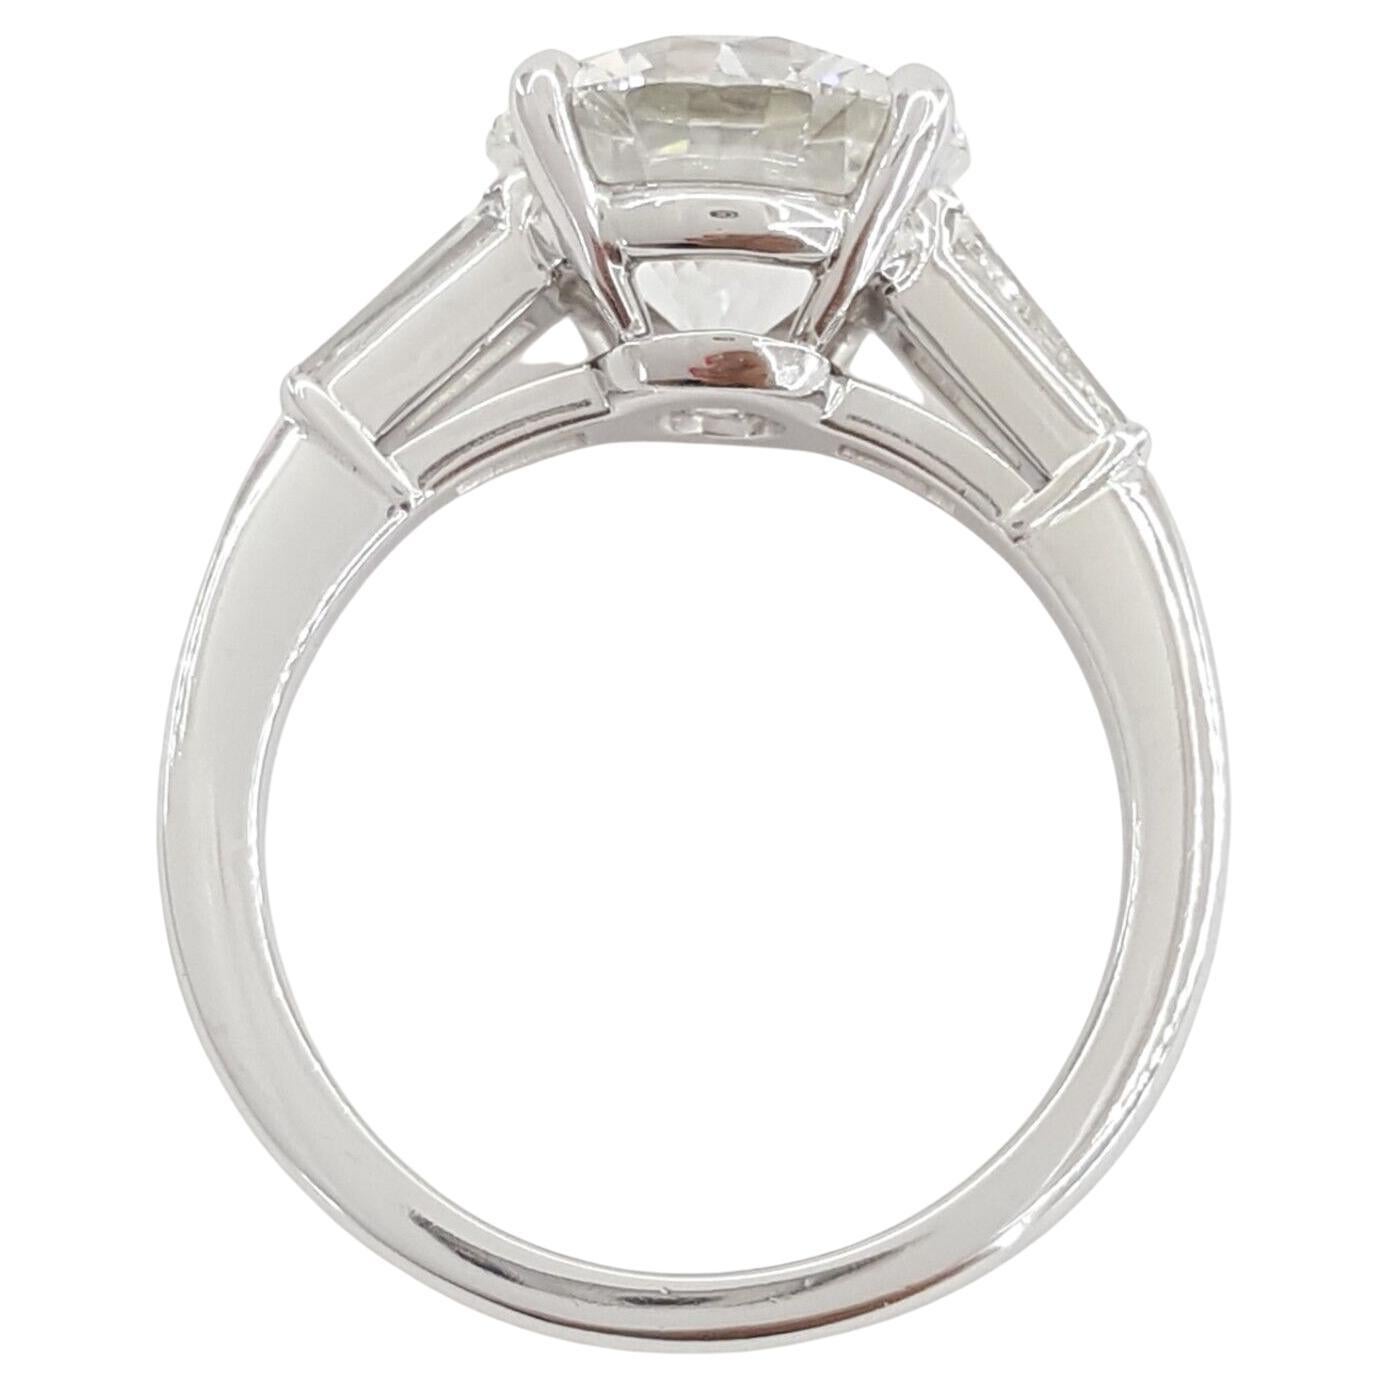 Tiffany & Co.  Verlobungsring aus Platin mit rundem Brillantschliff und Solitär. 
Der Hauptdiamant ist ein runder Diamant im Brillantschliff mit einem Gewicht von 3,40 ct, Farbe: G, Reinheit: VVS2. Der Mittelstein hat einen ausgezeichneten Schliff,